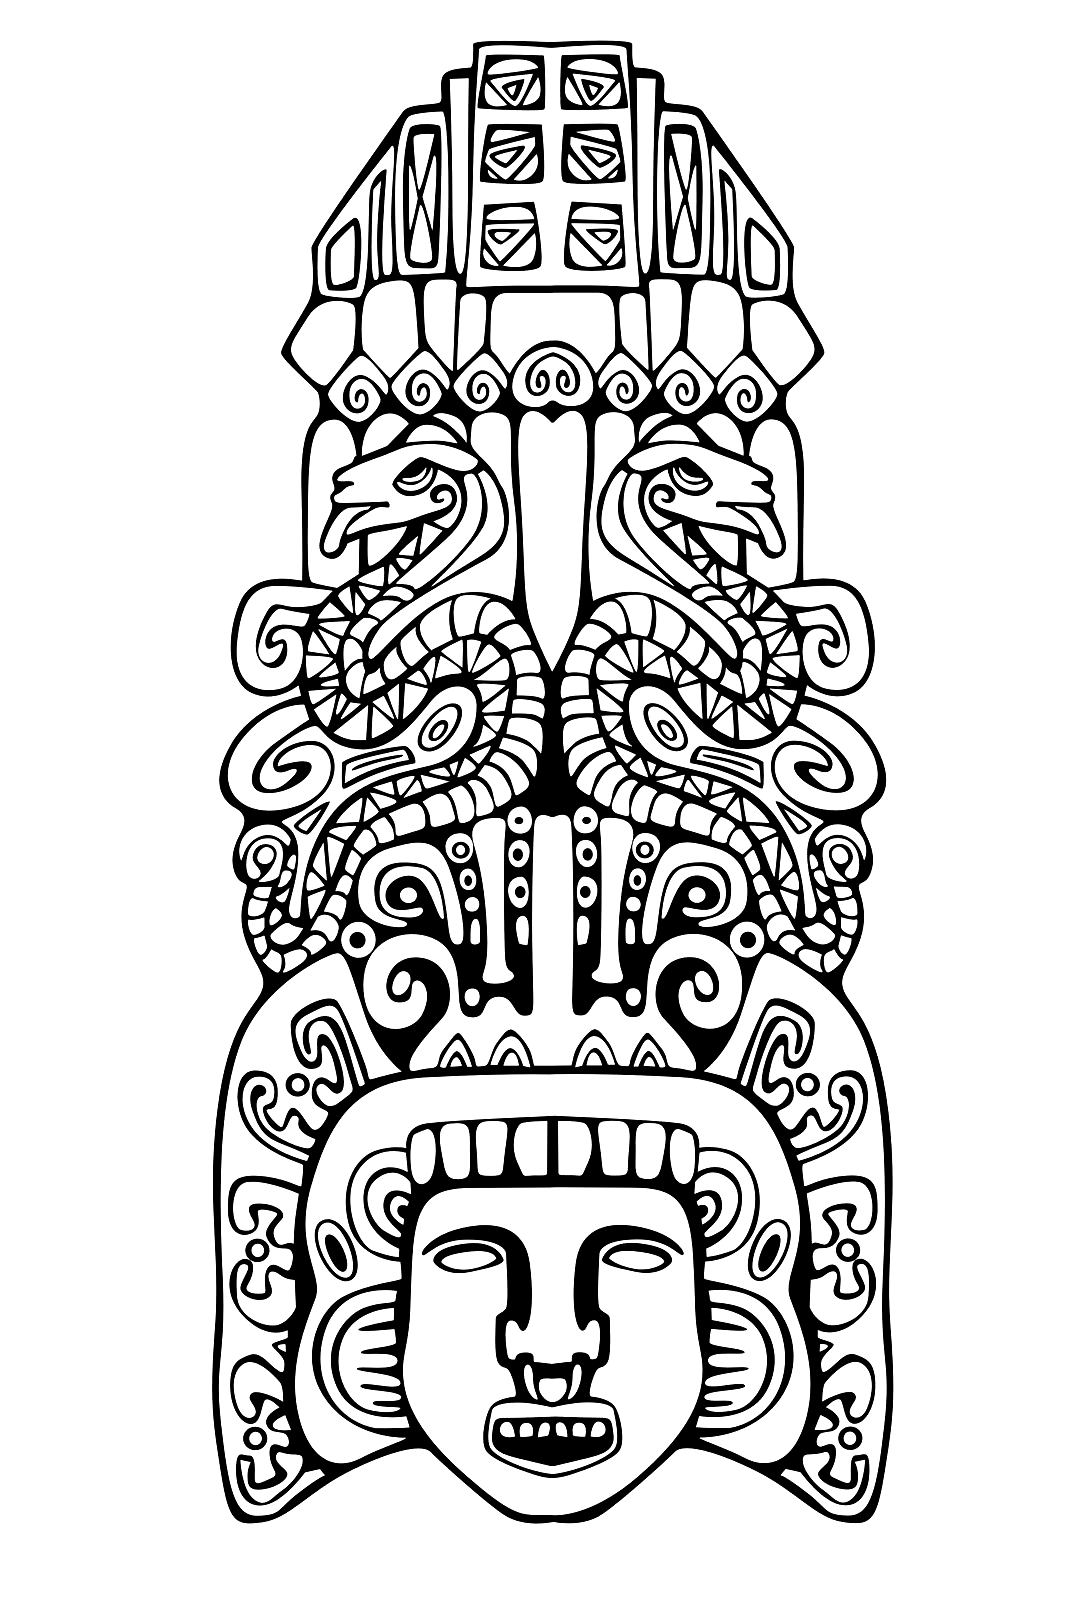 Disegni da colorare per adulti : Maya, Aztechi e Incas - 7, Artista : Rocich   Fonte : 123rf